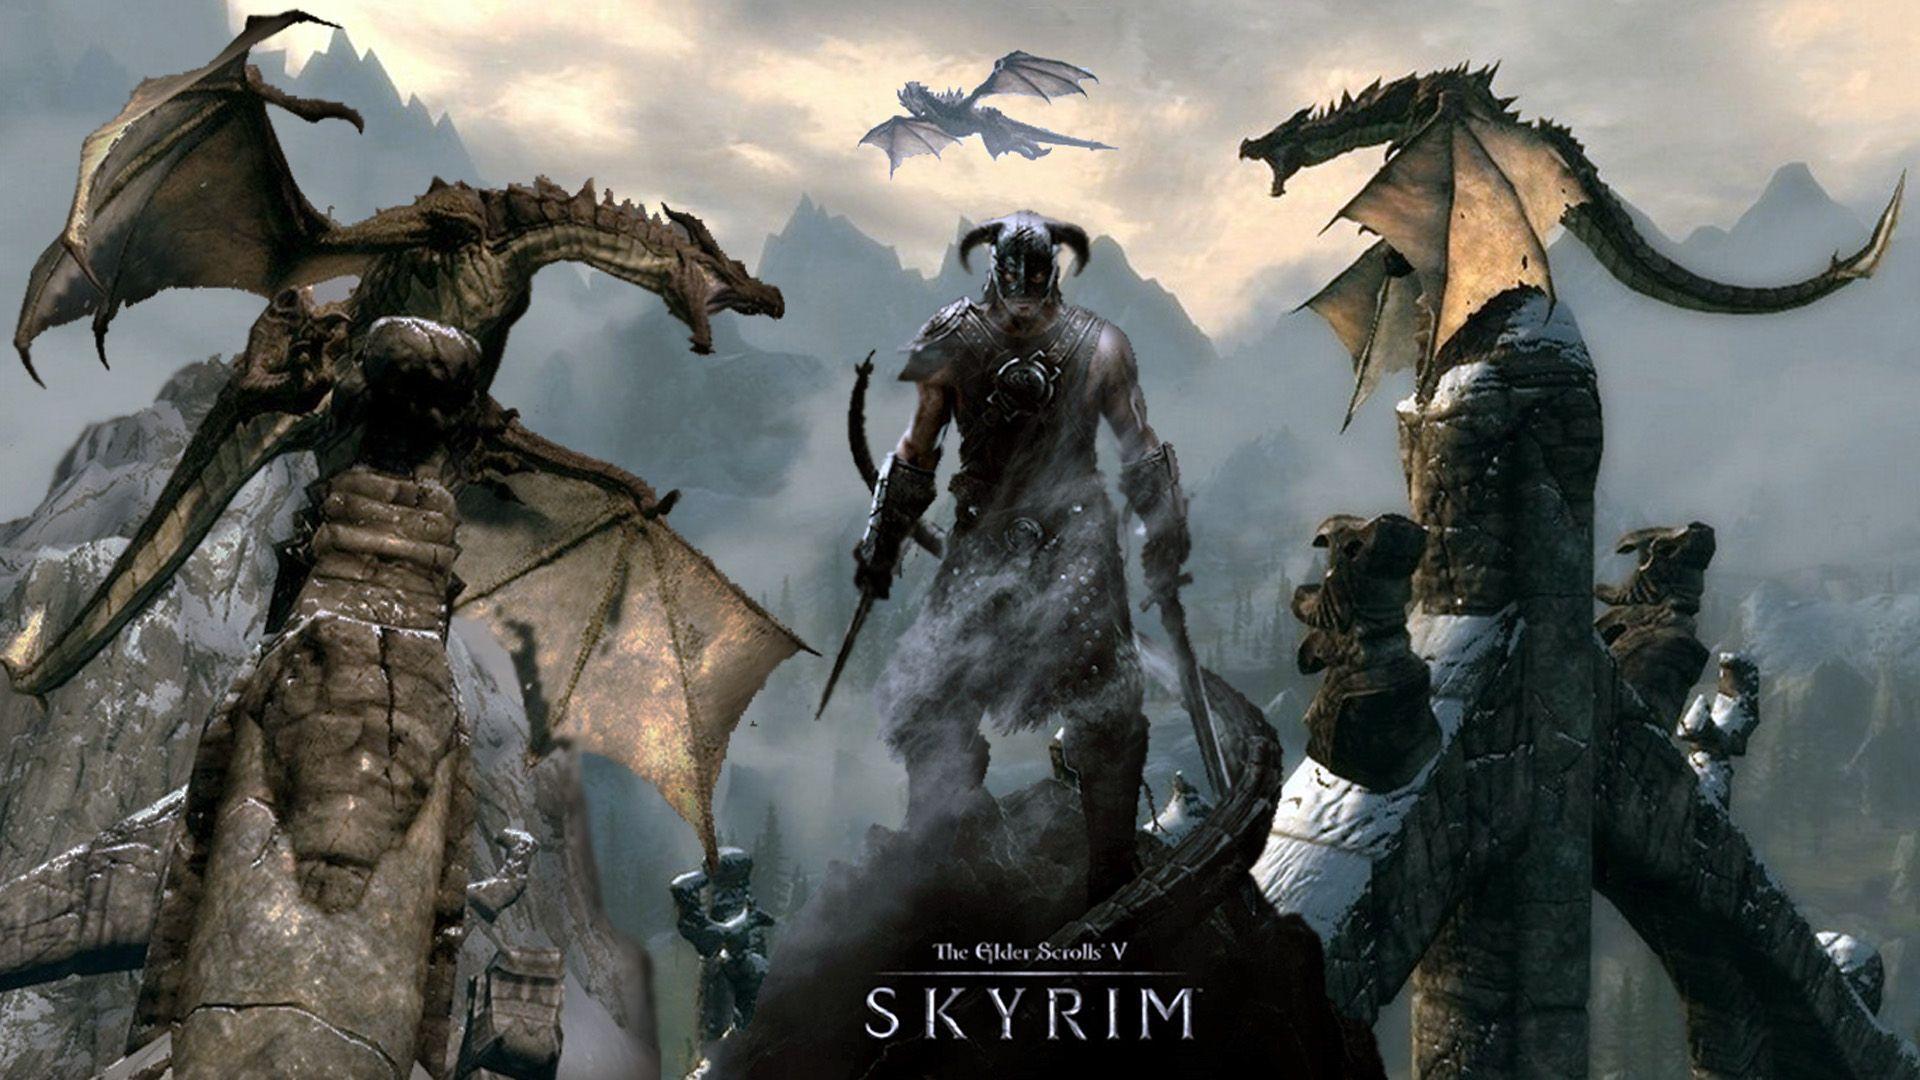 The Elder Scrolls V Skyrim HD Wallpaper Background. wallpaper